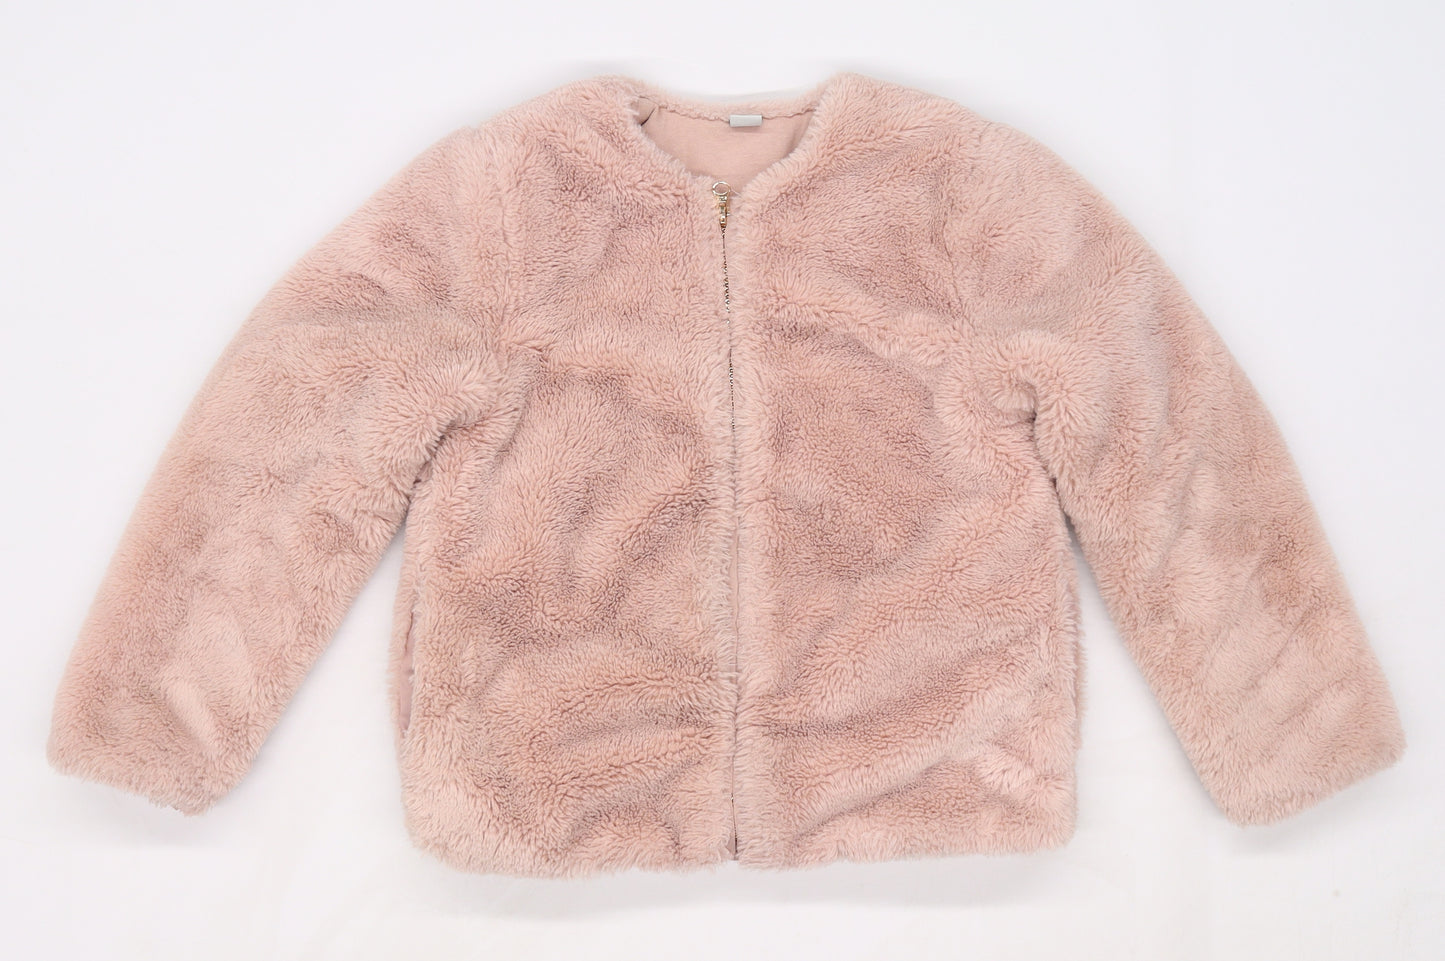 TU Girls Pink   Jacket Coat Size 7 Years